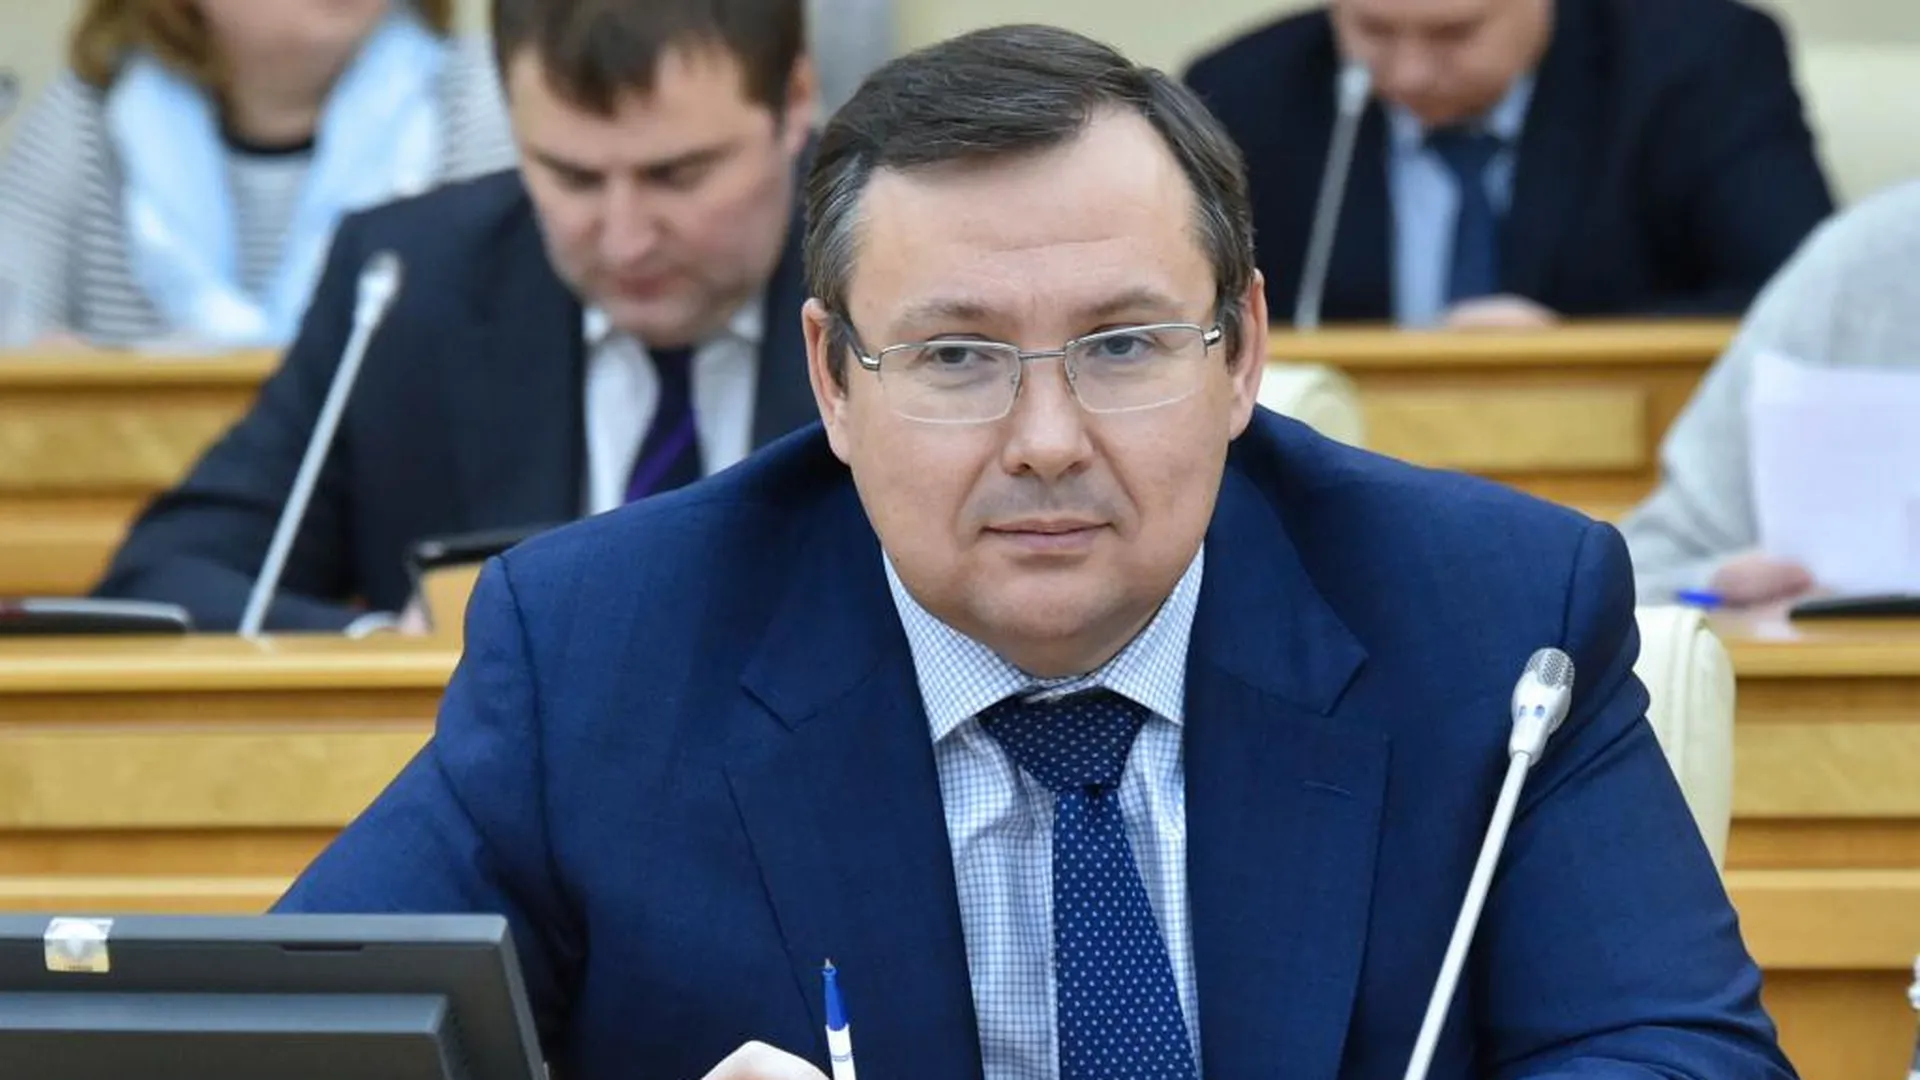 Мособлдума согласовала назначение Игоря Трескова на должность вице‑губернатора Подмосковья